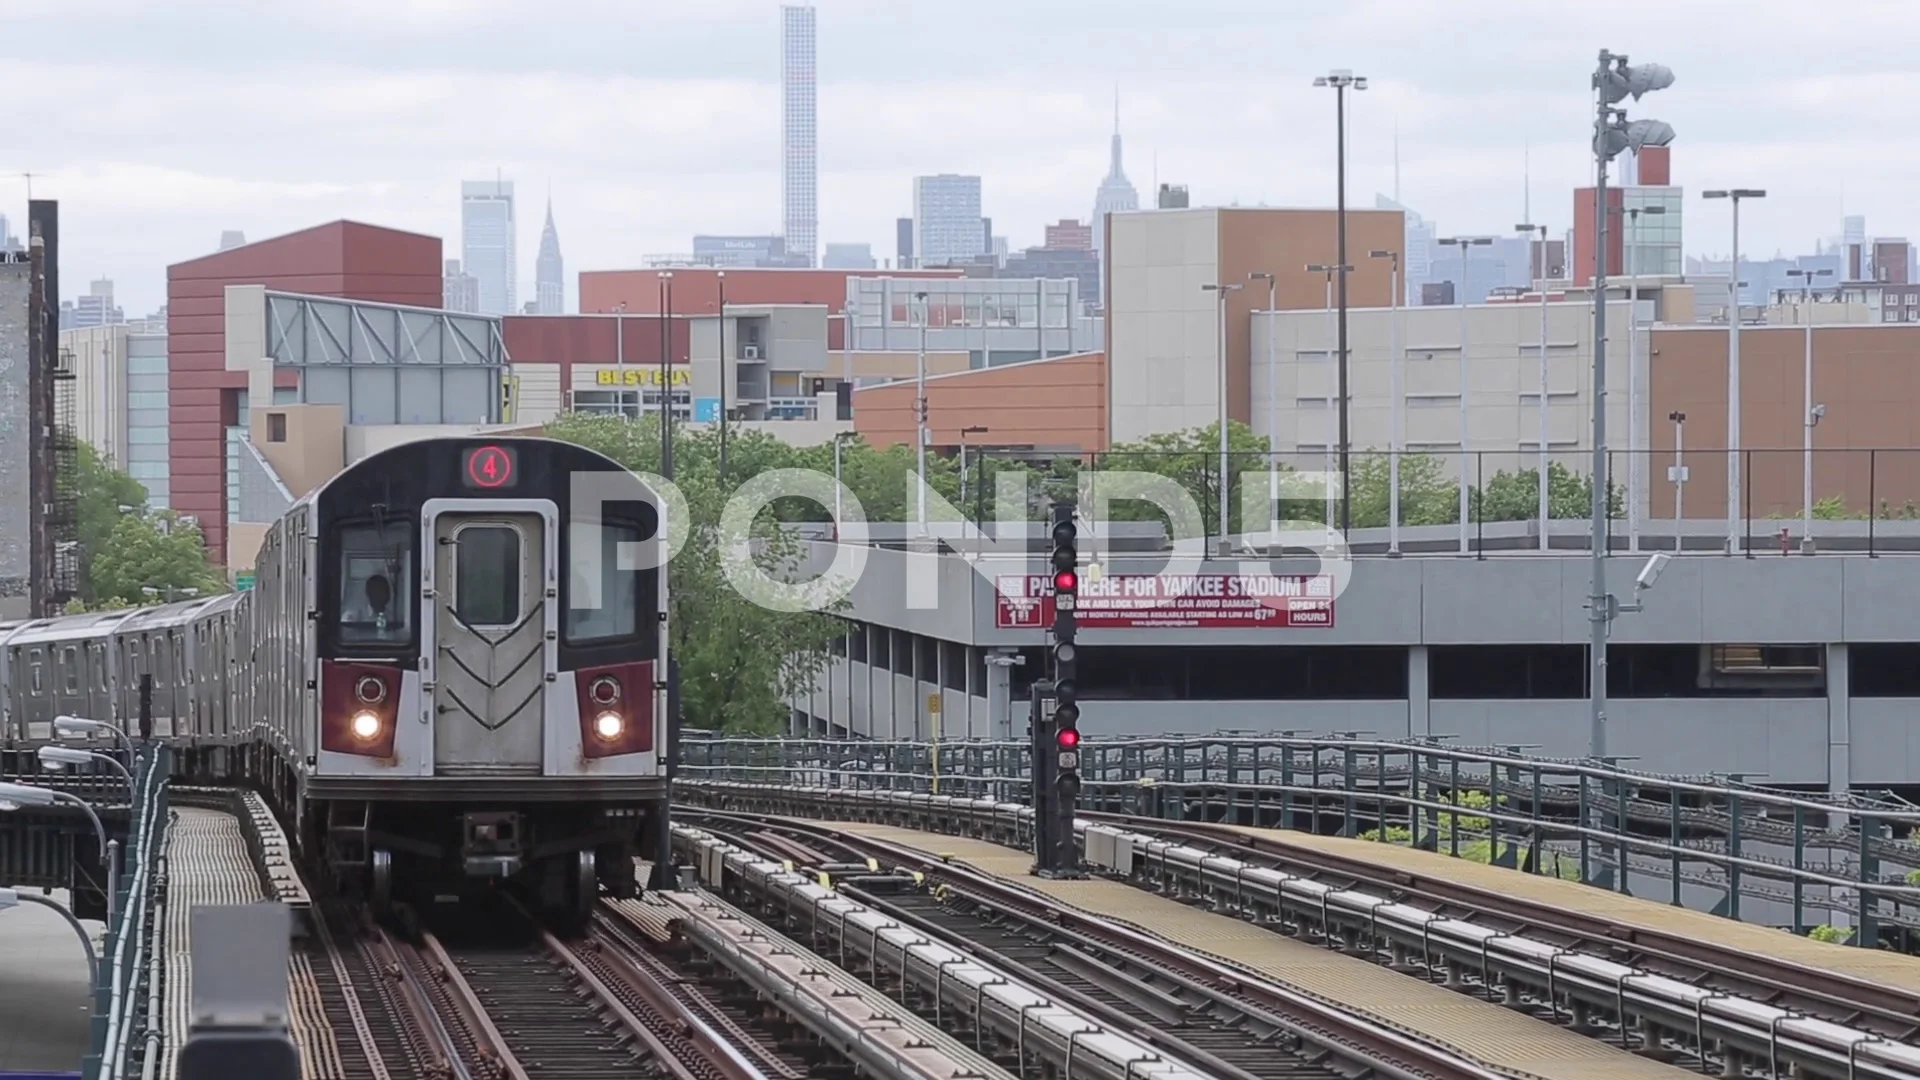 4 Subway Platform, Train and Tracks at Yankee Stadium, The Bronx